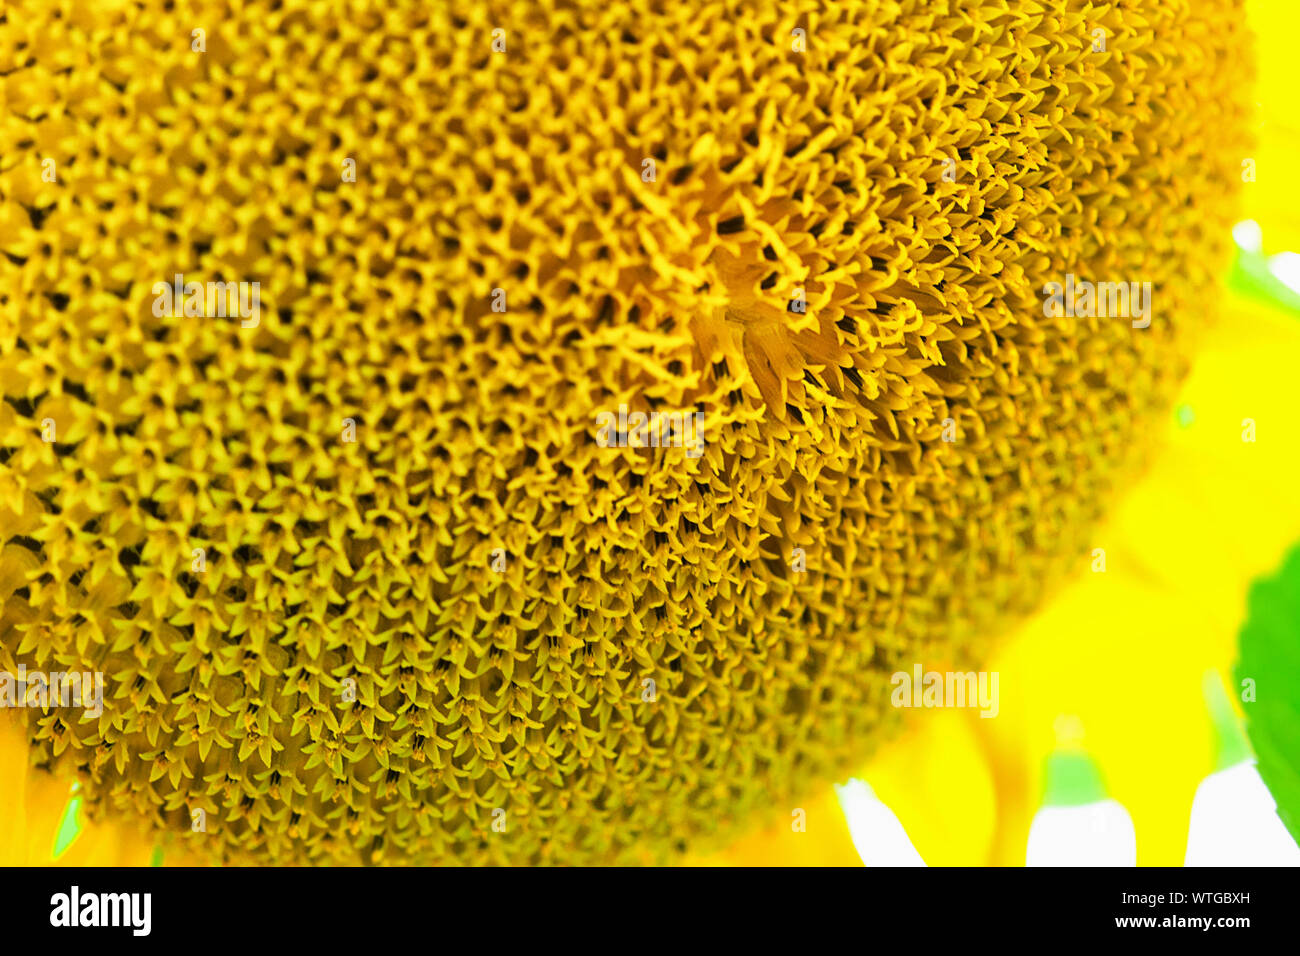 La tête d'un tournesol avec beaucoup de fleurs qui se transforment en graines. Un plus grand s'épanouir dans l'avant-plan. Banque D'Images